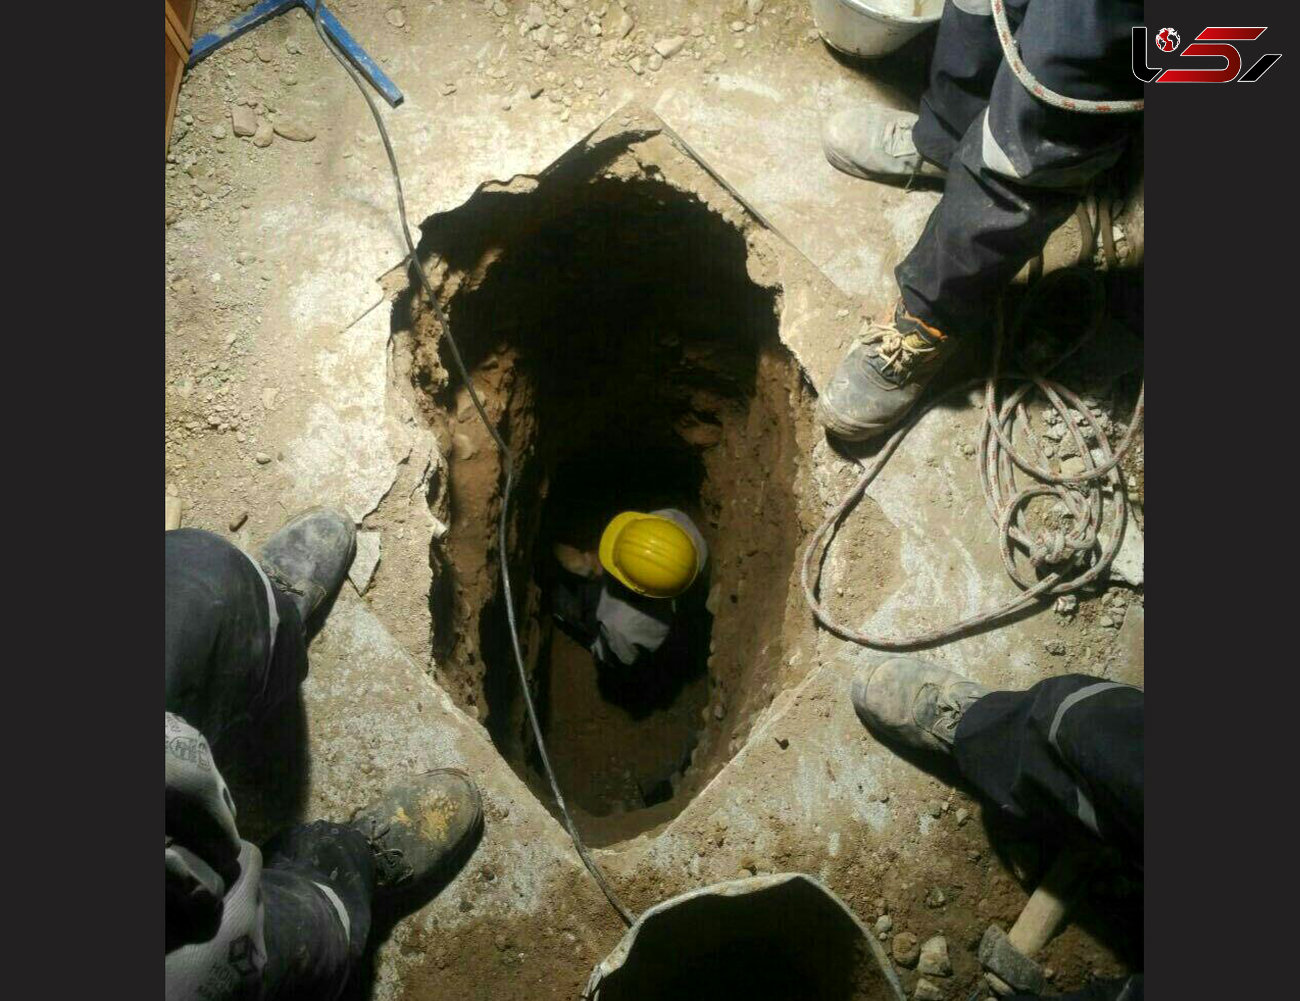 آتش نشان ها مجبور به حفر تونل شدند / شرایط سخت امدادرسانی در پلاسکو + عکس حفره